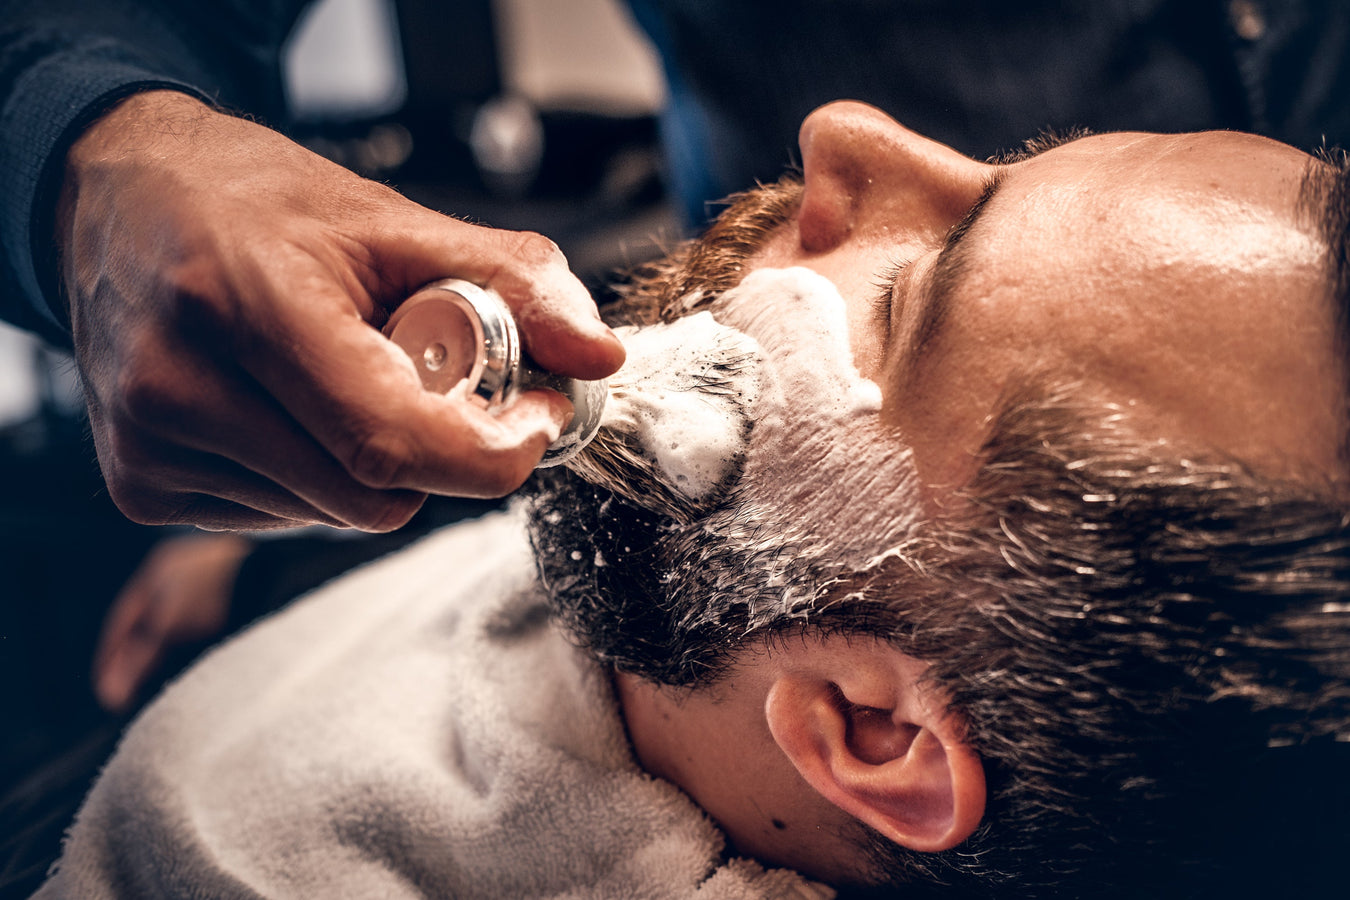 Barber using shaving soap